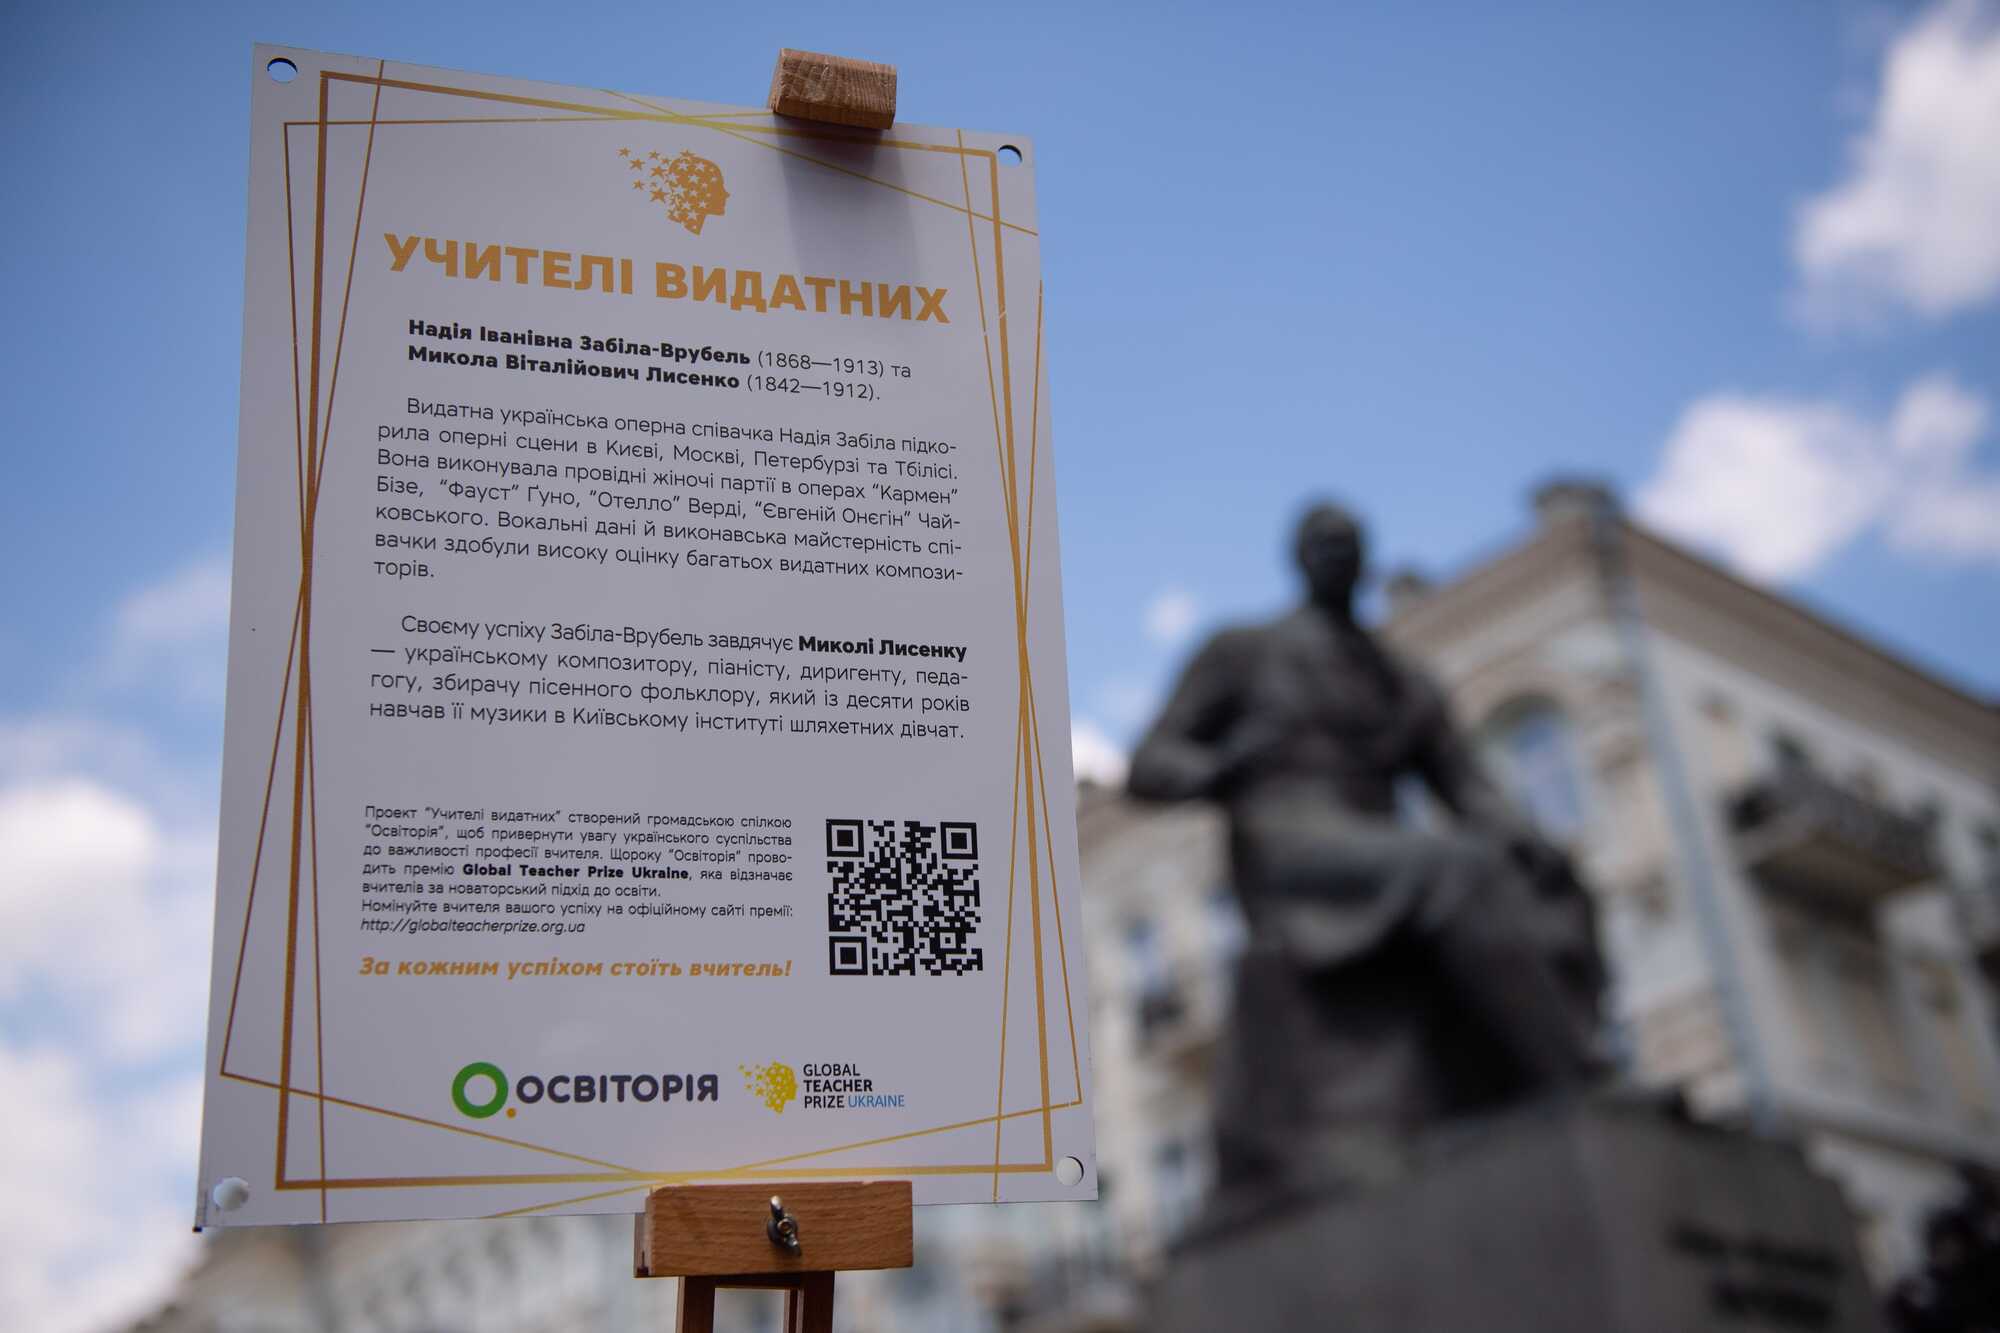 В столице появились мемориальные таблички в честь учителей известных украинцев